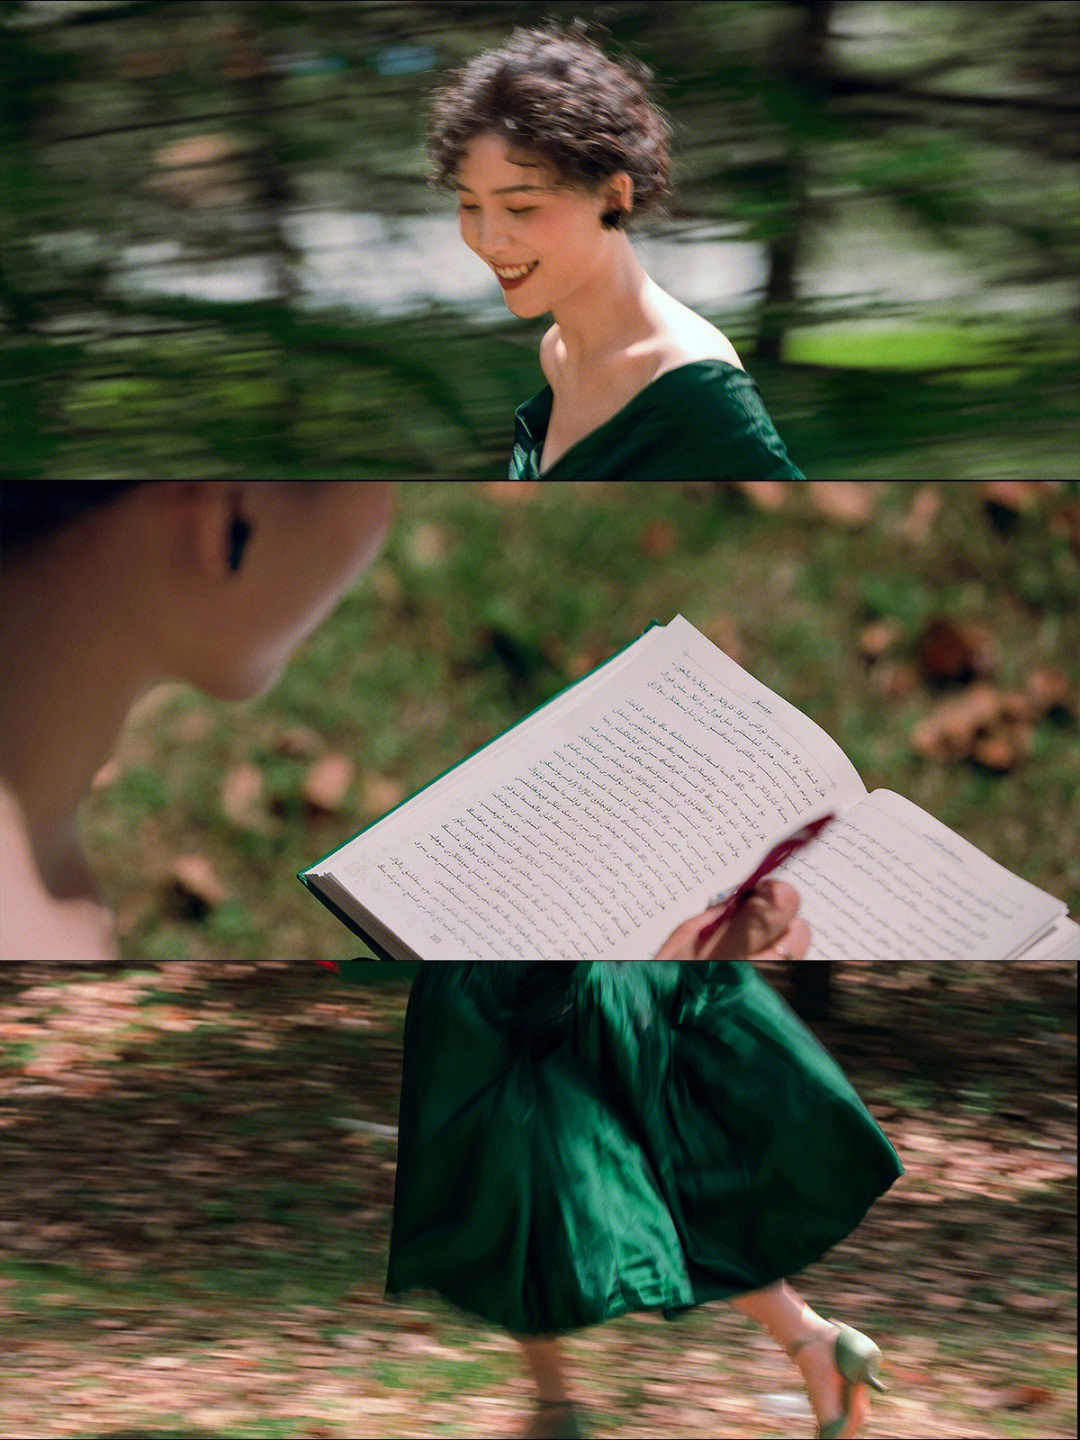 93灵感来源:电影《赎罪》中的小绿裙奔跑的镜头惊艳了许久,be美学的